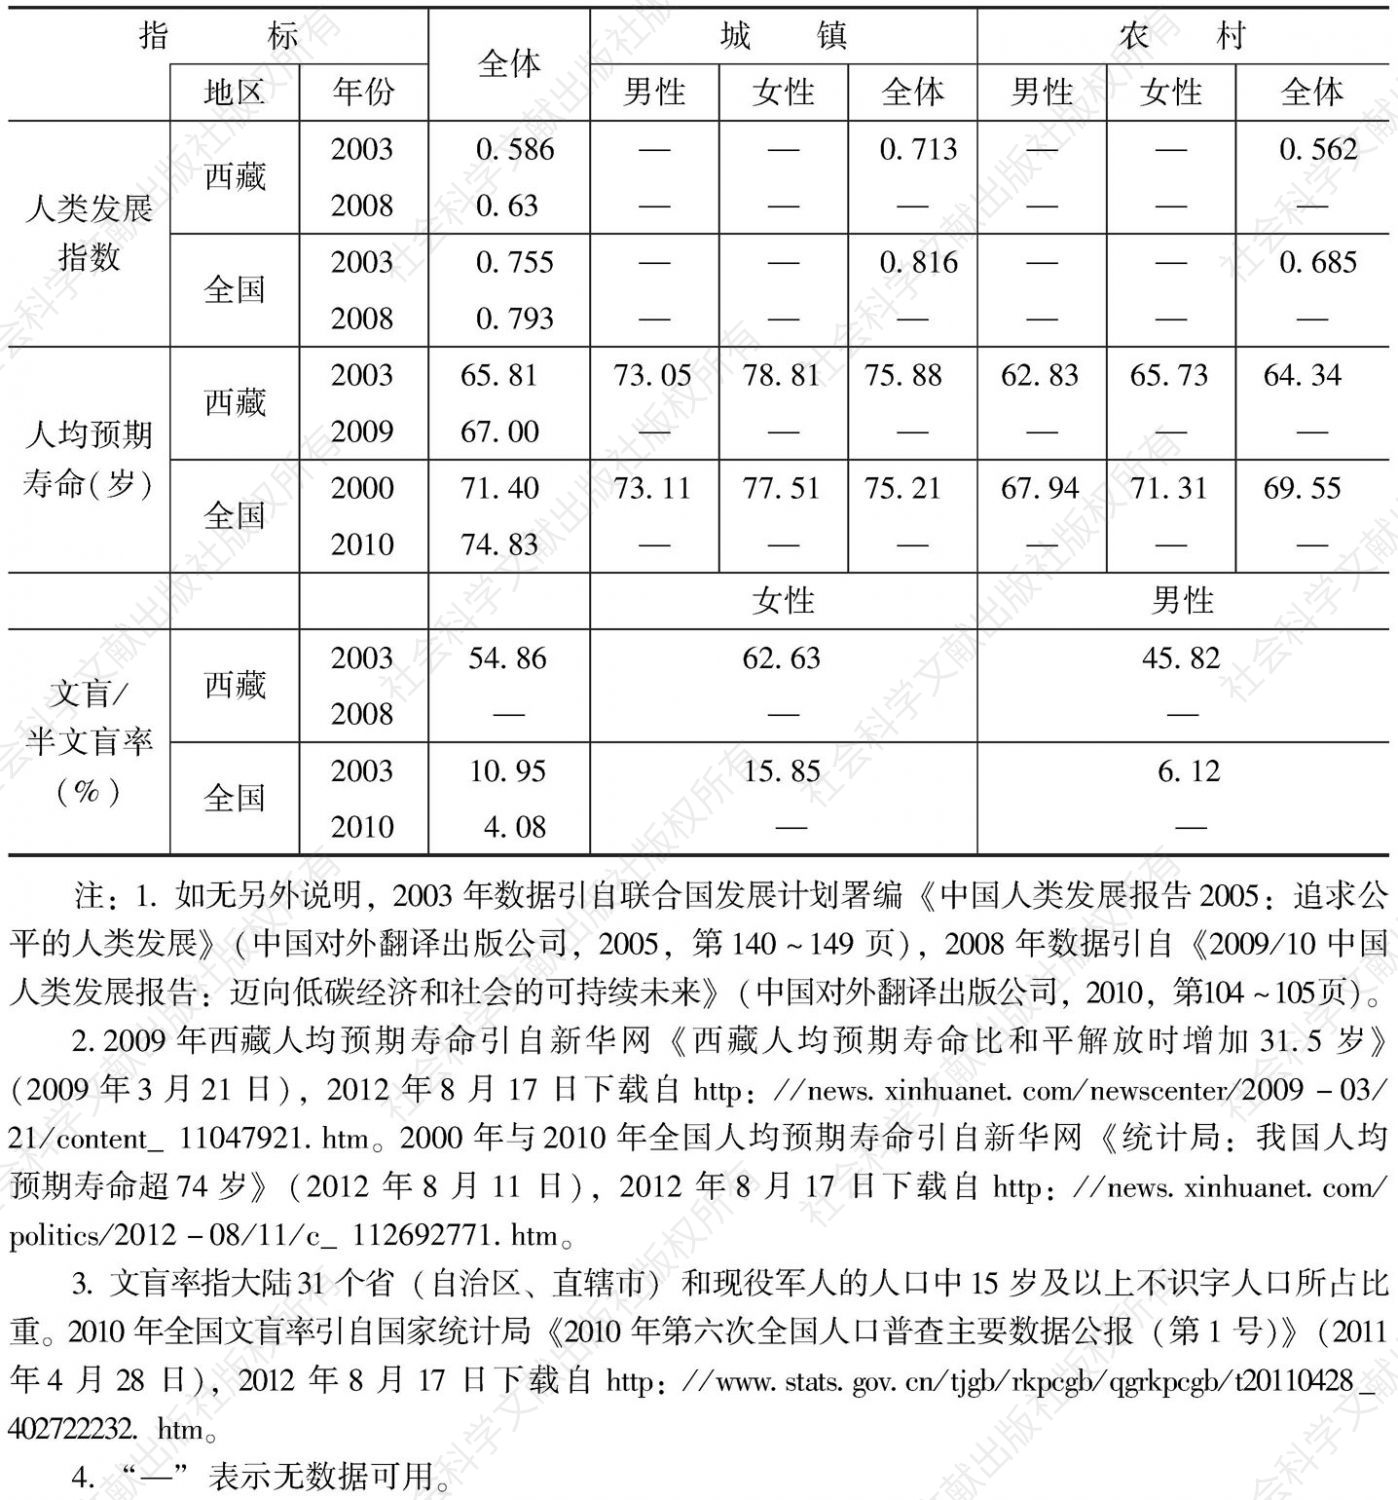 表1-2 西藏自治区人类发展指标值